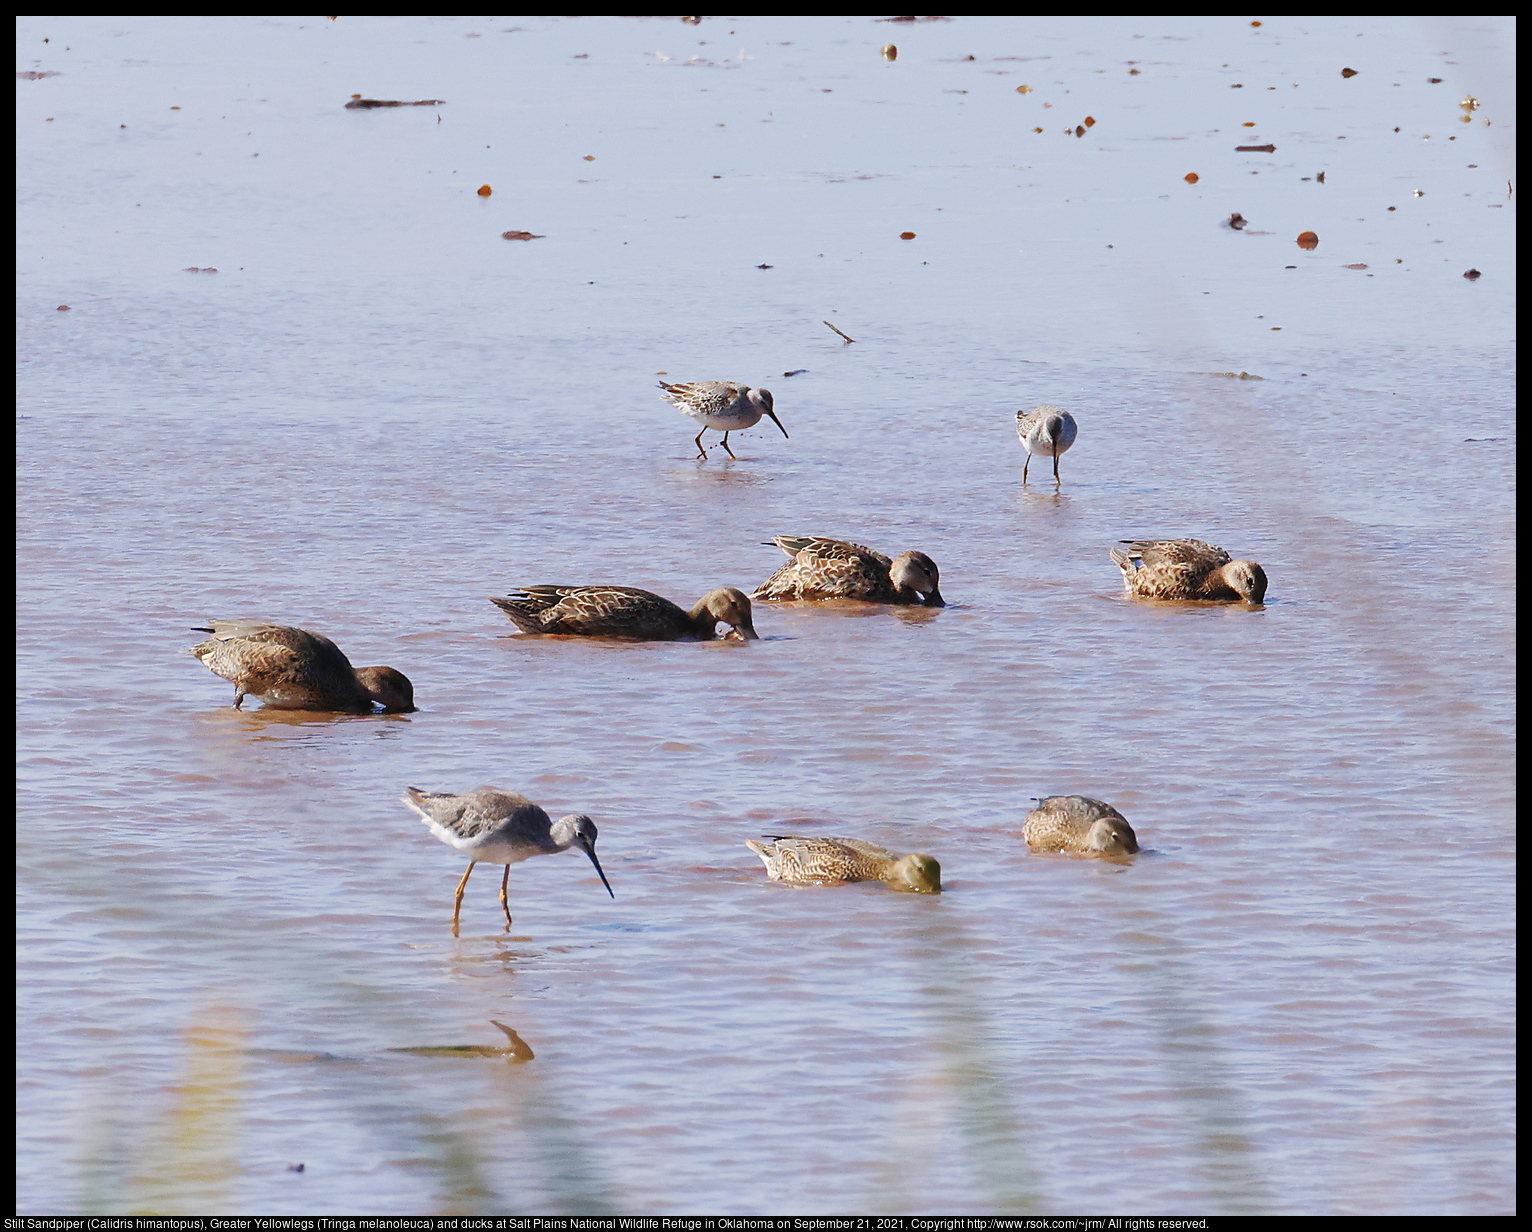 Stilt Sandpiper (Calidris himantopus), Greater Yellowlegs (Tringa melanoleuca) and ducks at Salt Plains National Wildlife Refuge in Oklahoma on September 21, 2021